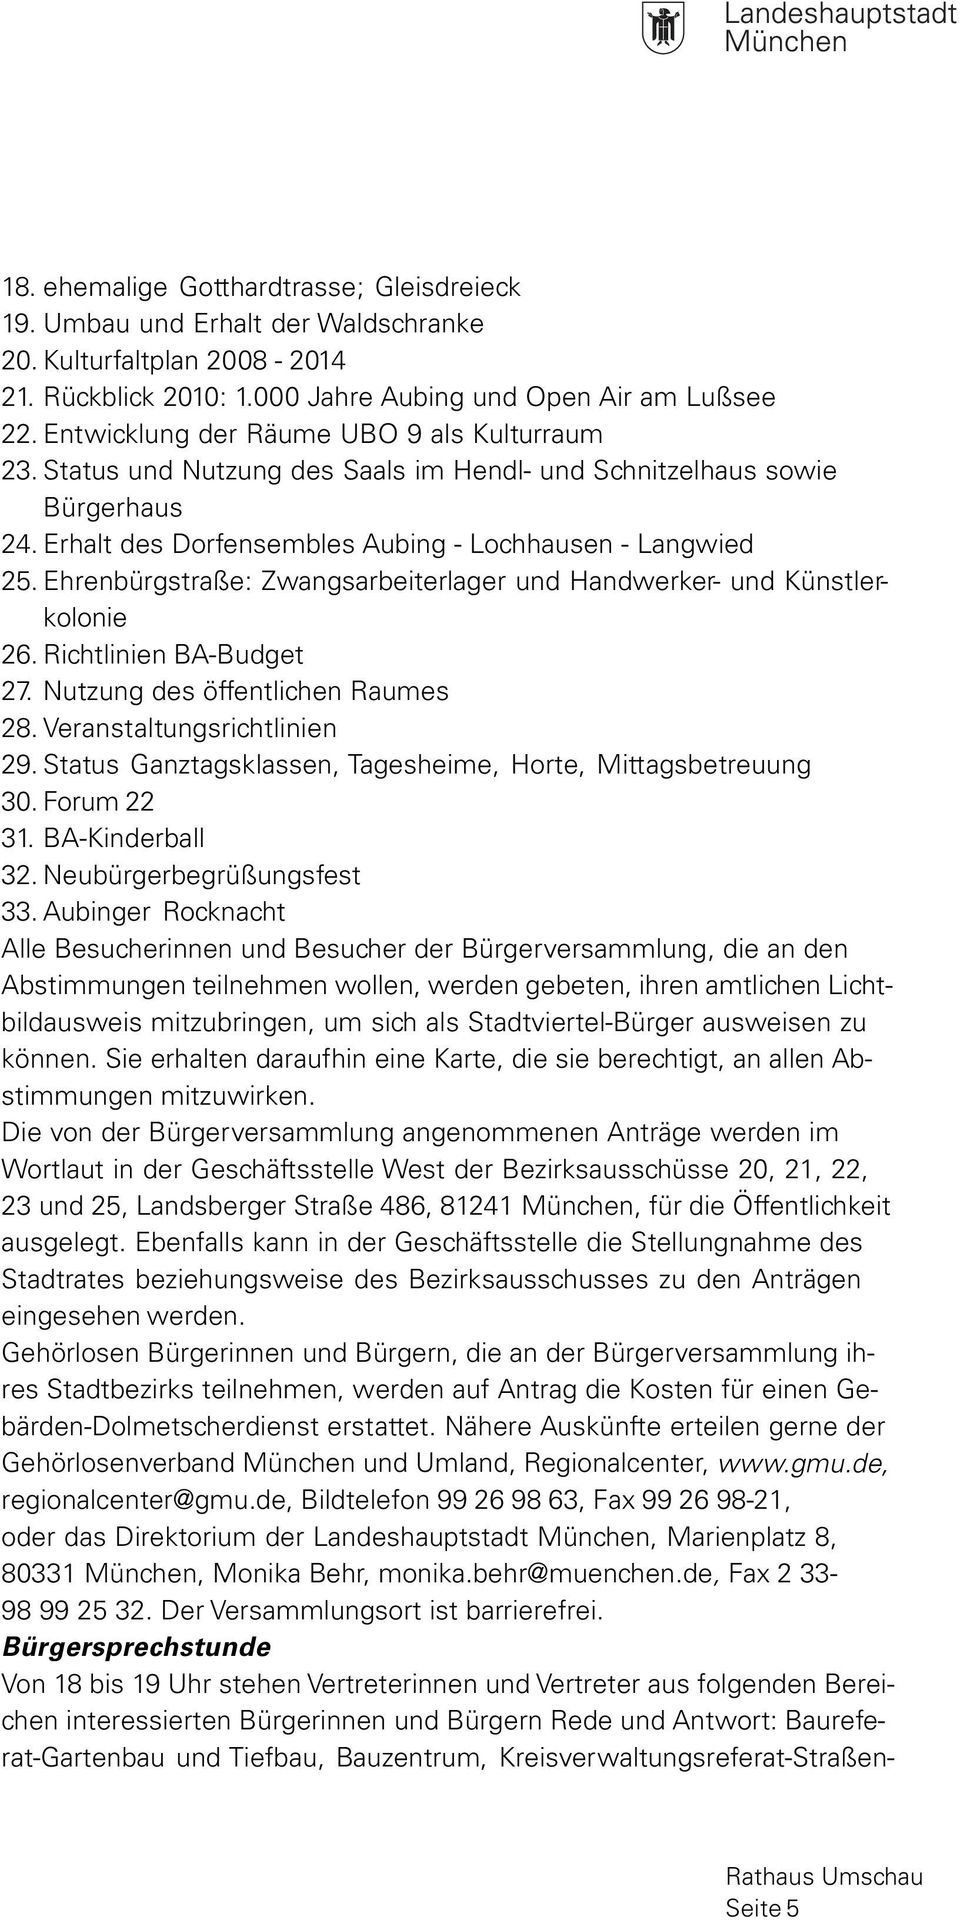 Ehrenbürgstraße: Zwangsarbeiterlager und Handwerker- und Künstlerkolonie 26. Richtlinien BA-Budget 27. Nutzung des öffentlichen Raumes 28. Veranstaltungsrichtlinien 29.